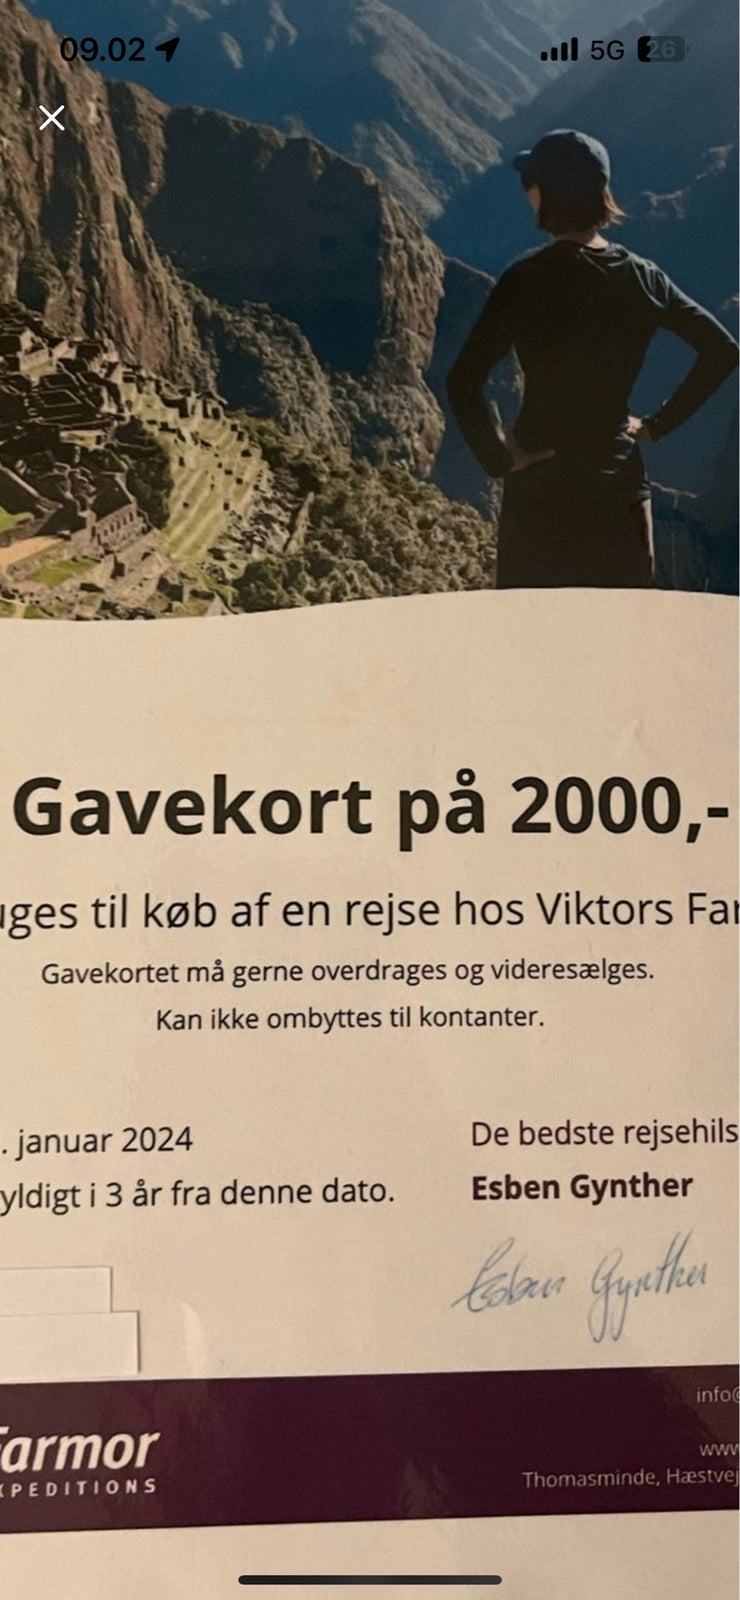 Viktors Farmor rejser  Gavekort på 2000 kr 

Vu...